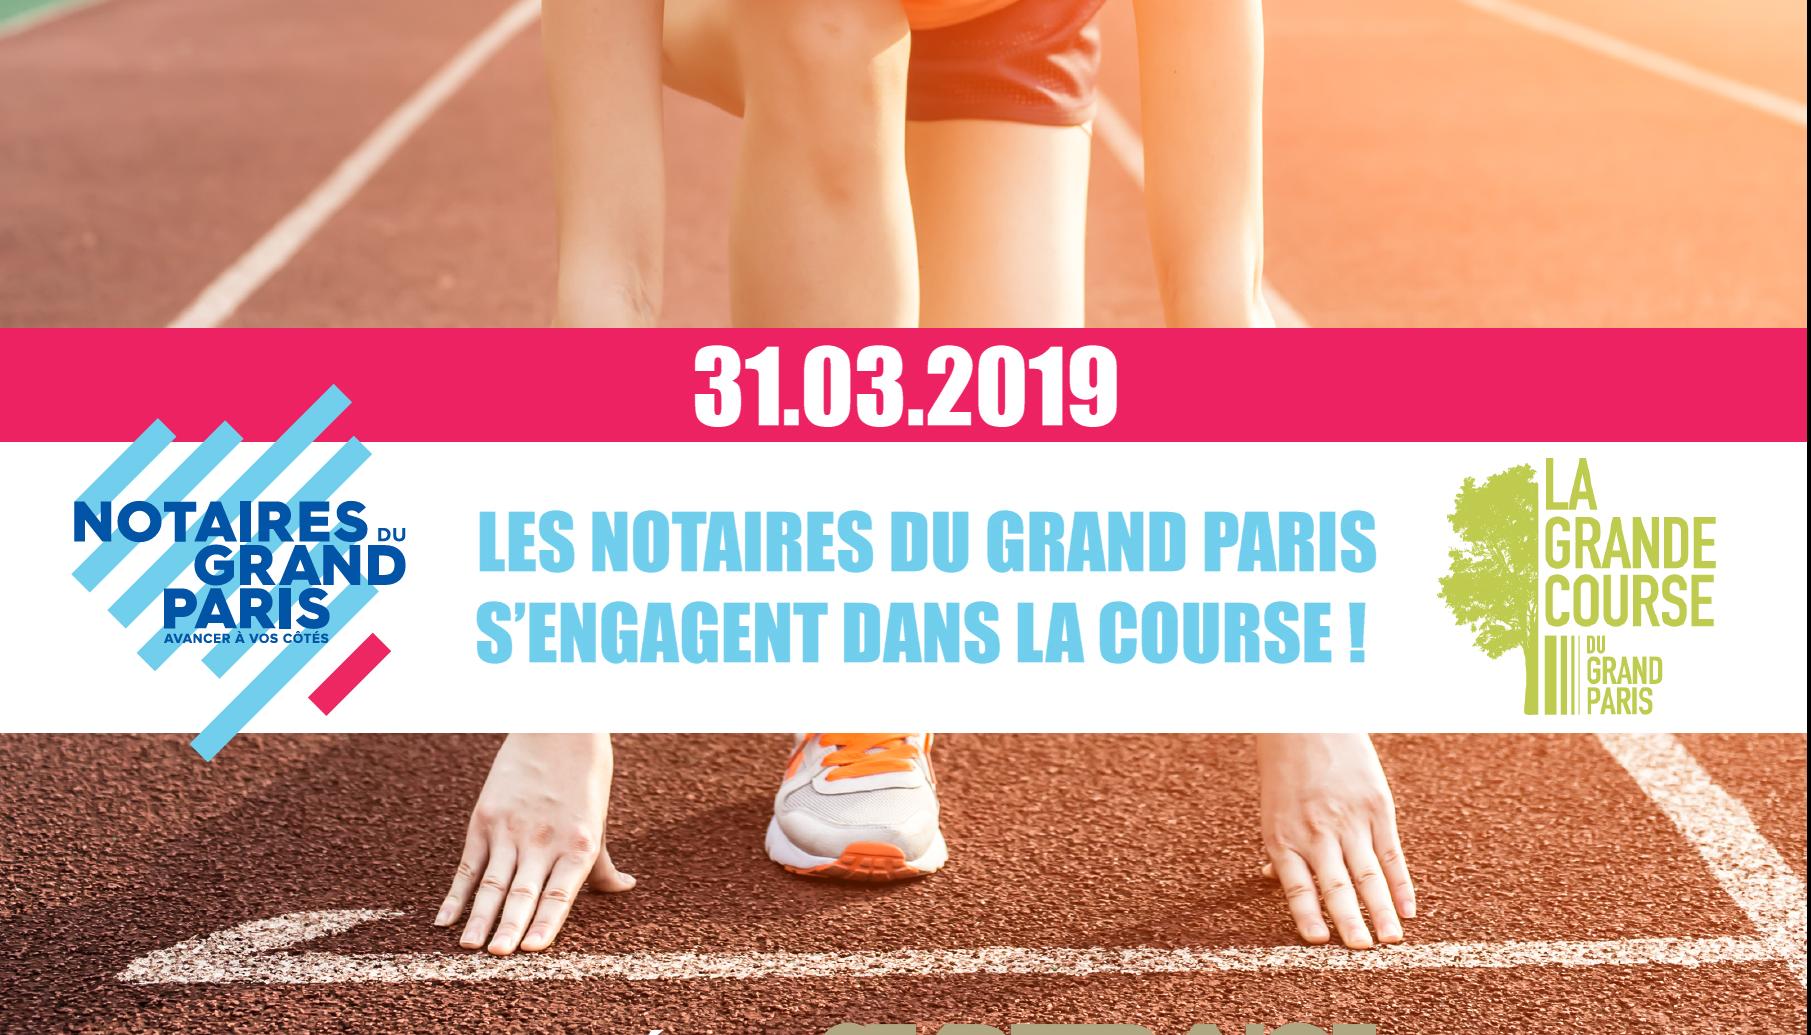 La GRANDE COURSE DU GRAND PARIS | Dimanche 31 mars 2019